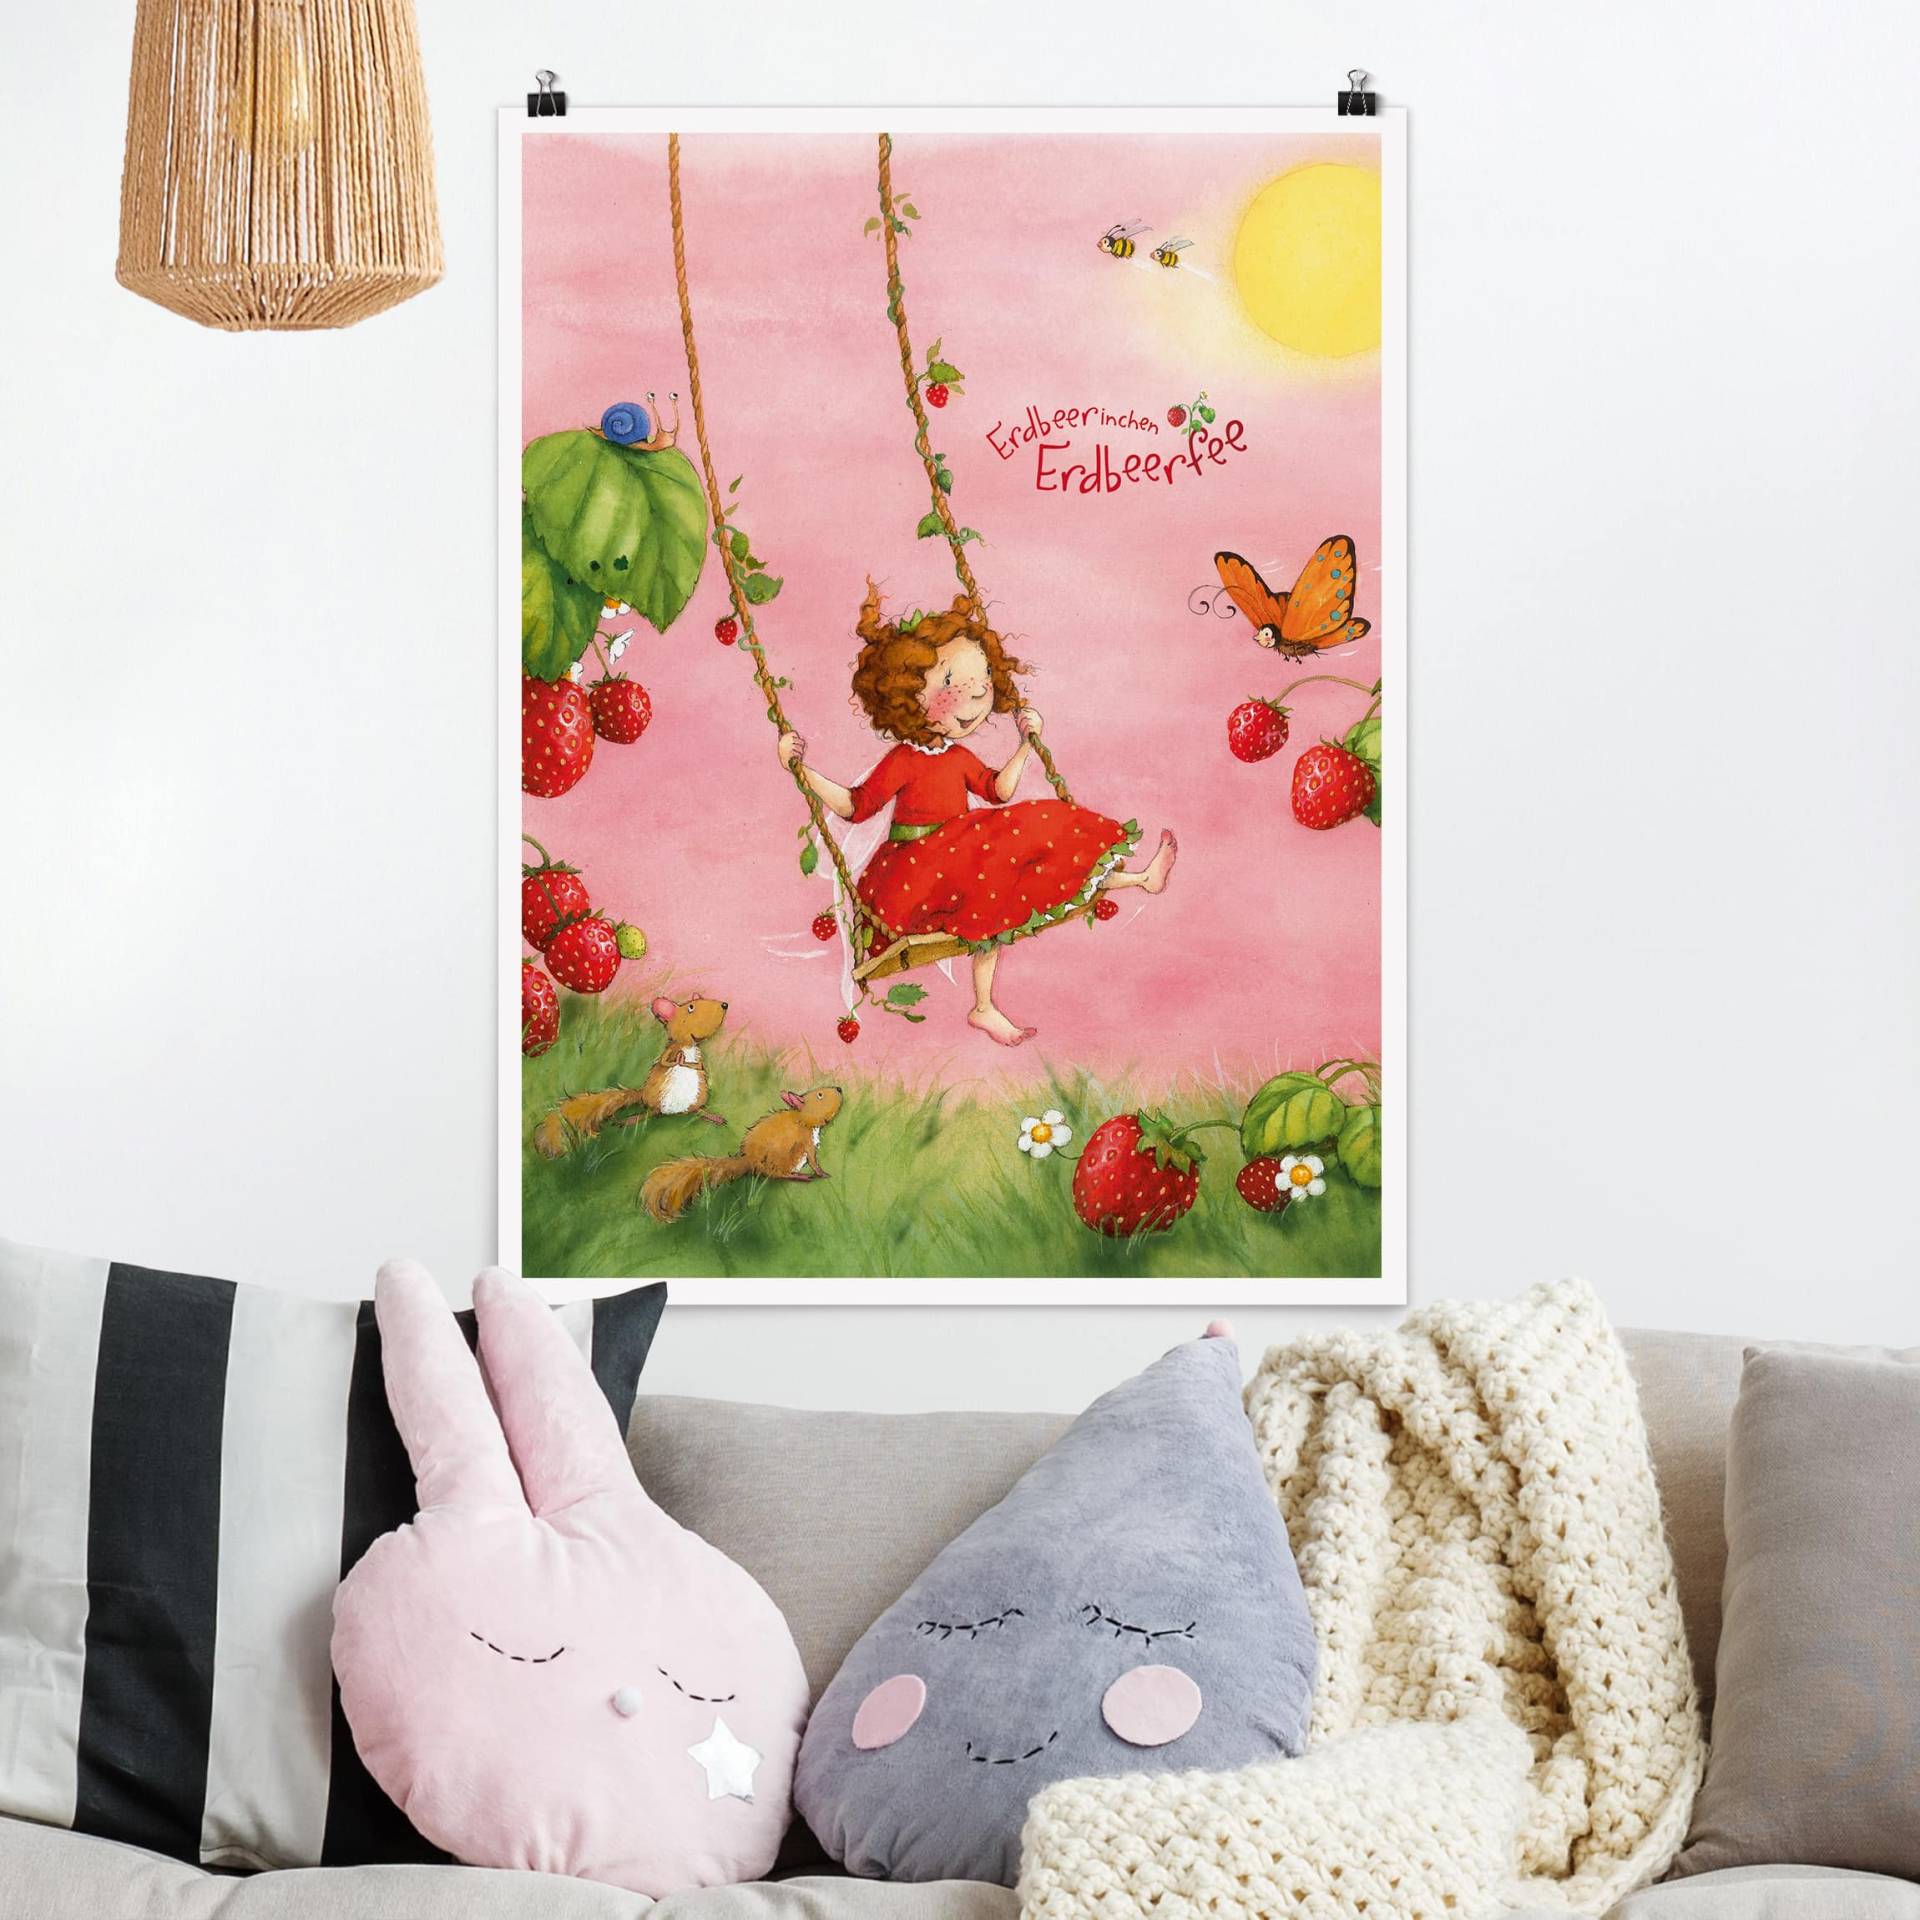 Poster Kinderzimmer Erdbeerinchen Erdbeerfee - Baumschaukel von Klebefieber